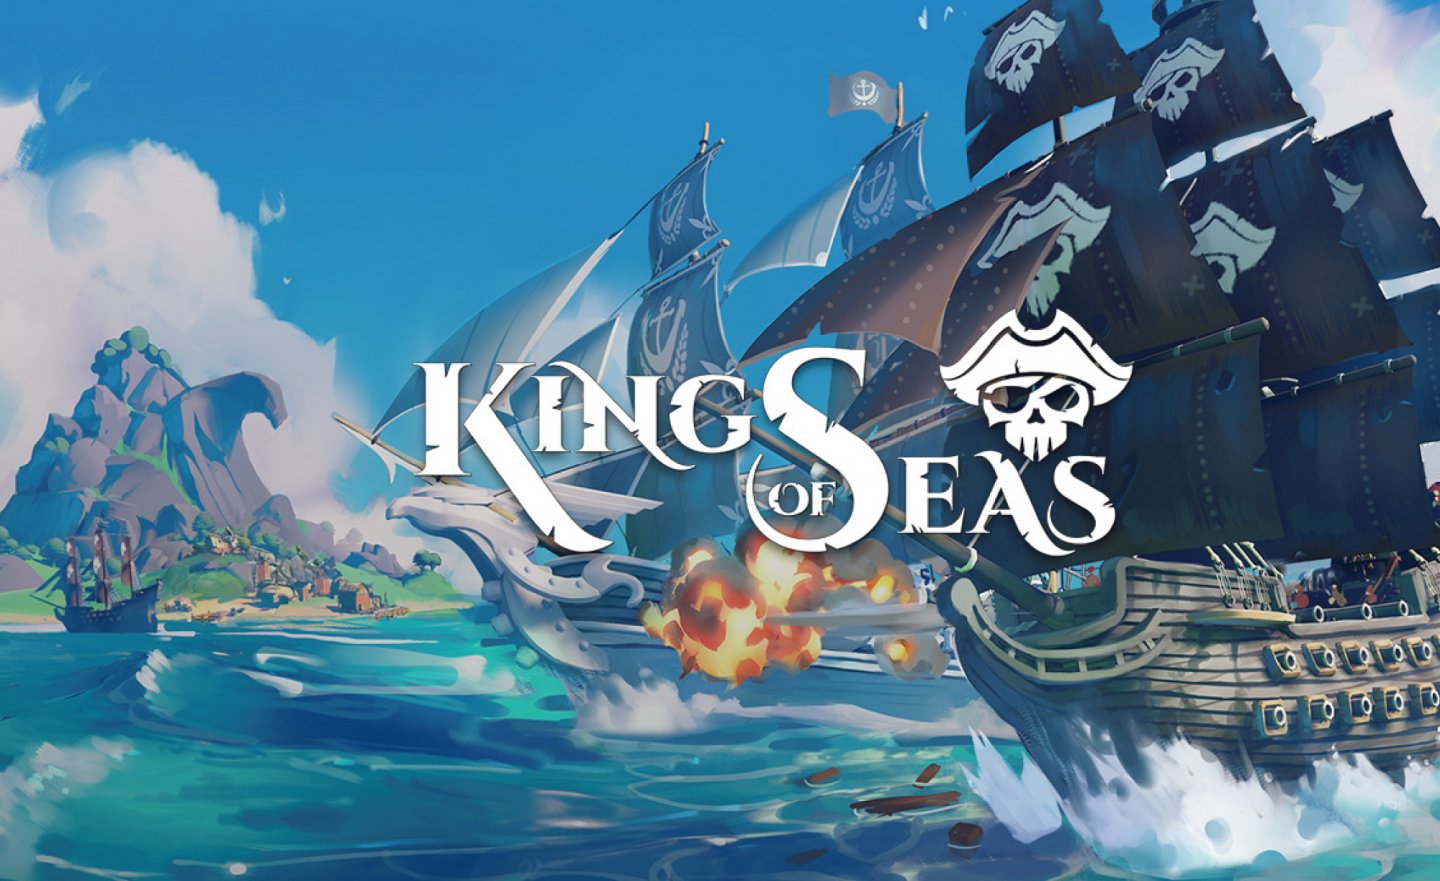 【限時免費】GOG 平台放送《King of Seas 七海之王》，2022 年 12 月 19 日 22:00 截止